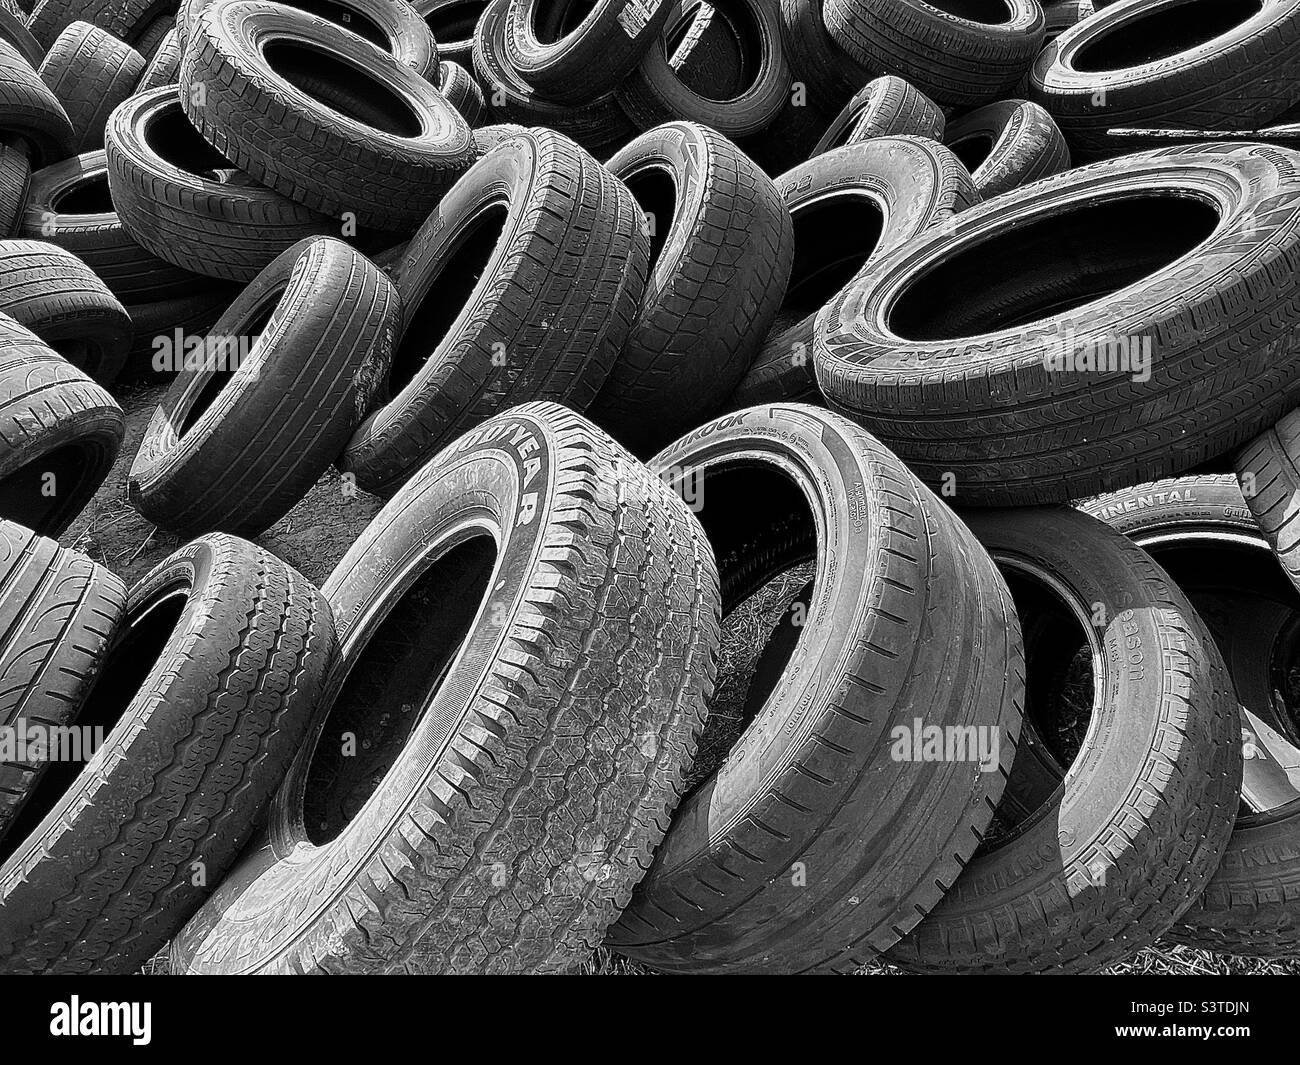 Un mazzo di pneumatici vecchi e usurati si sono accatastati dietro un negozio di auto/pneumatici nello Utah, USA. La desaturazione in bianco e nero e l'aggiunta di un certo contrasto rende un astratto interessante. Foto Stock